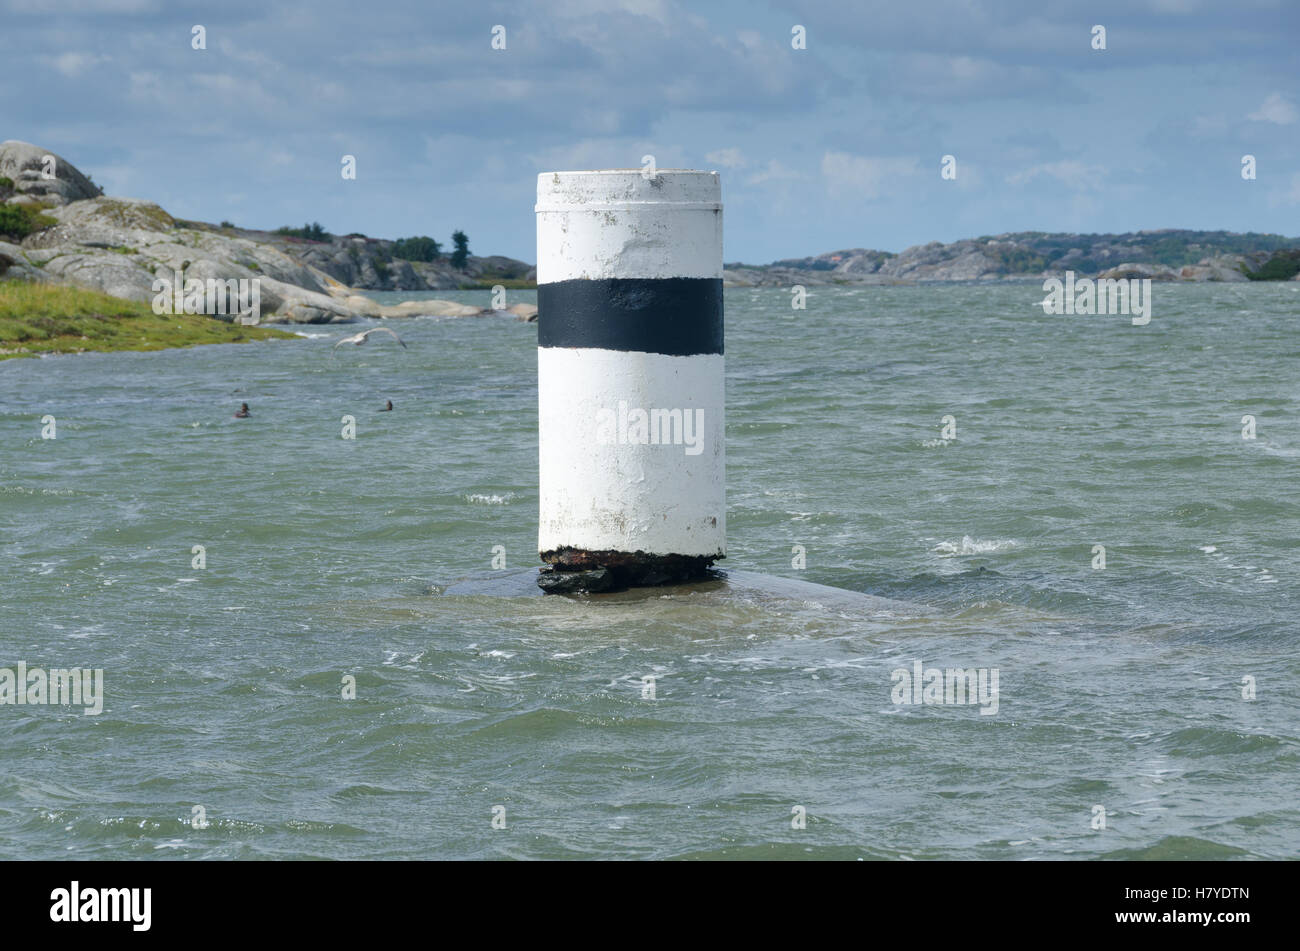 eine Navigation zu markieren, im Wasser zu helfen, das Boot sicher fahren Stockfoto